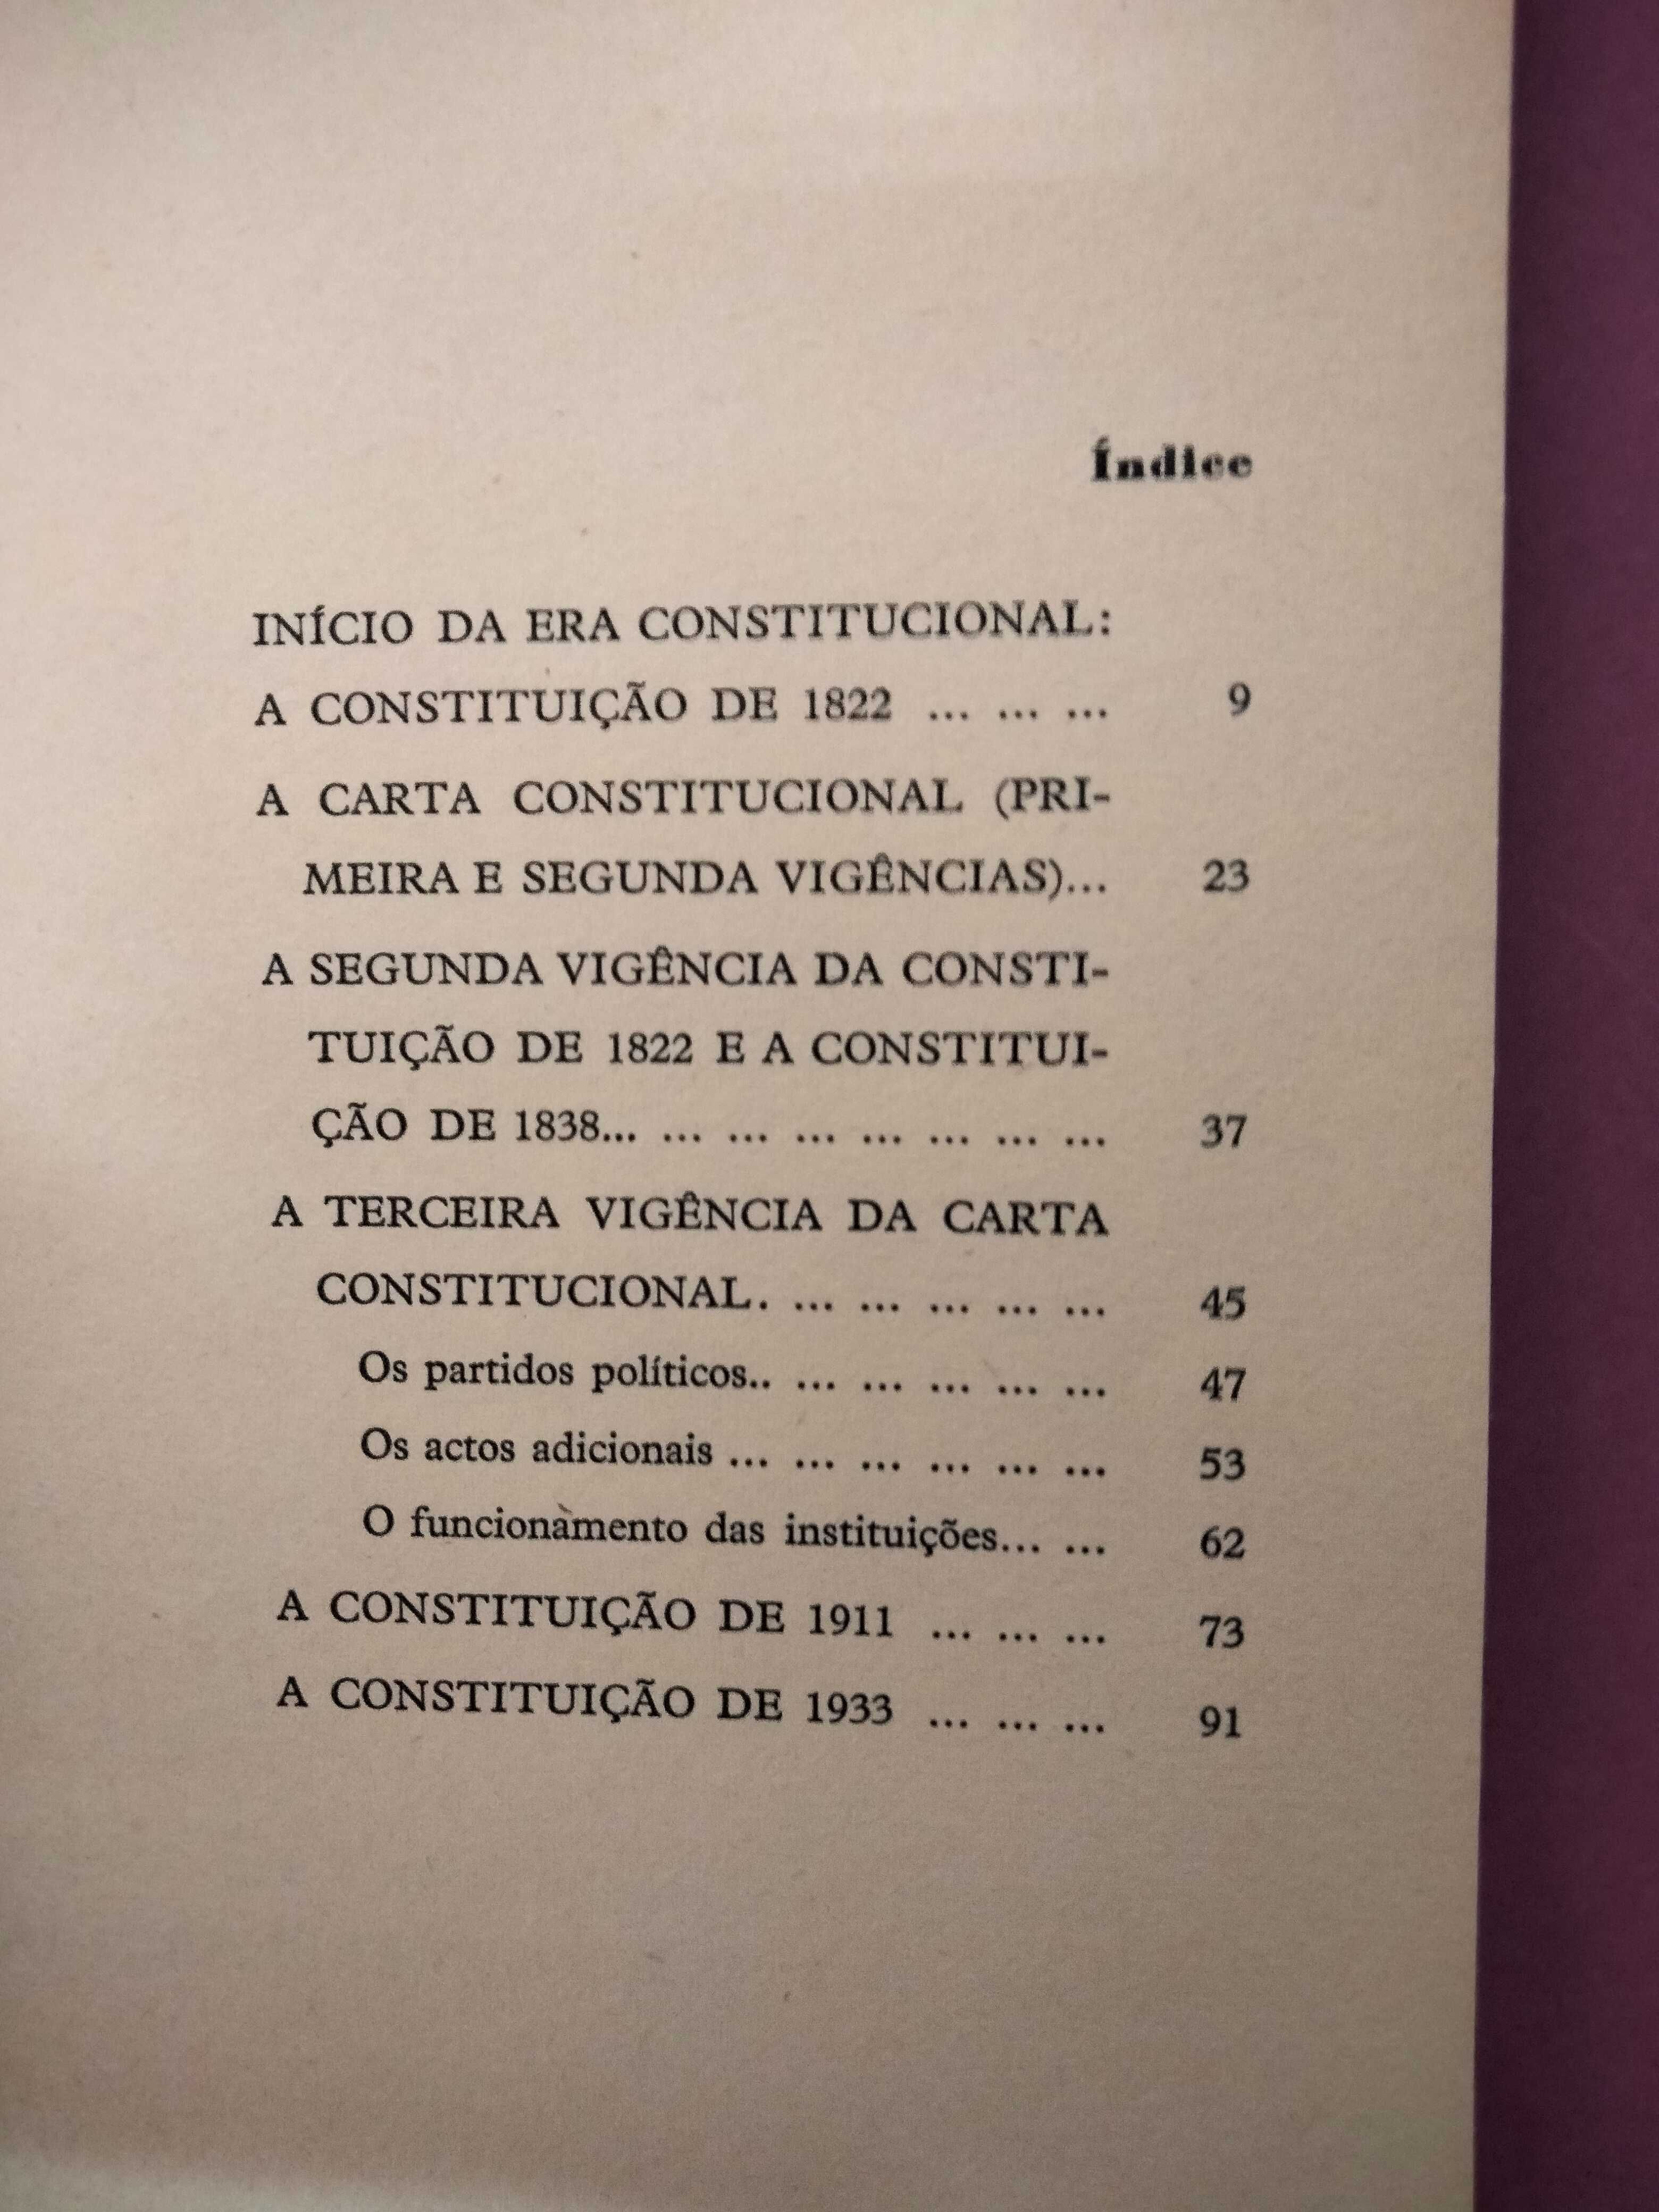 História Breve das Constituições Portuguesas - Marcello Caetano